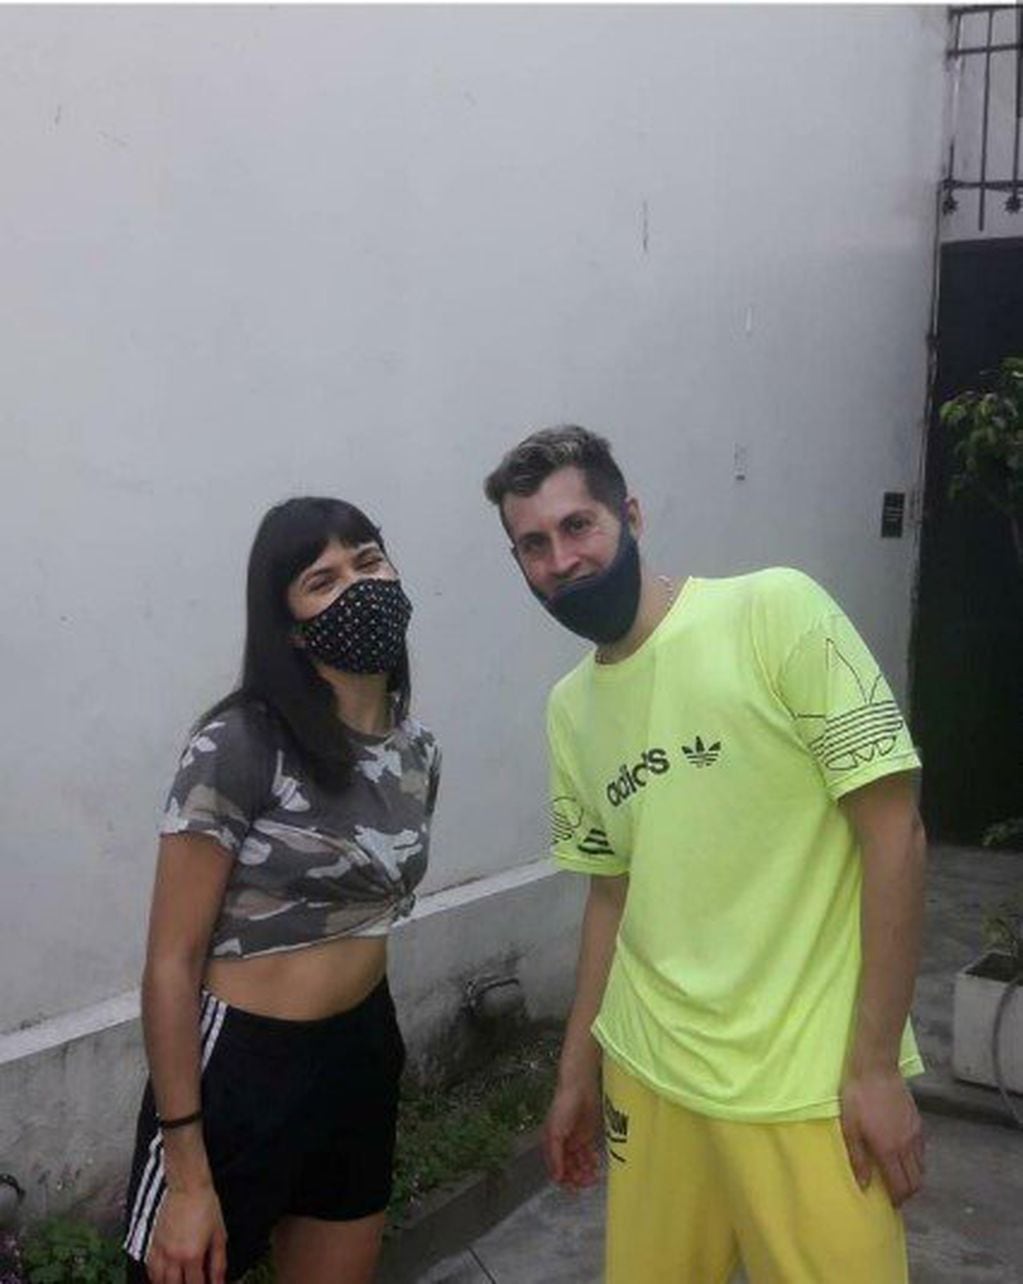 Julieta Anton y el atacante (Foto: Clarín)